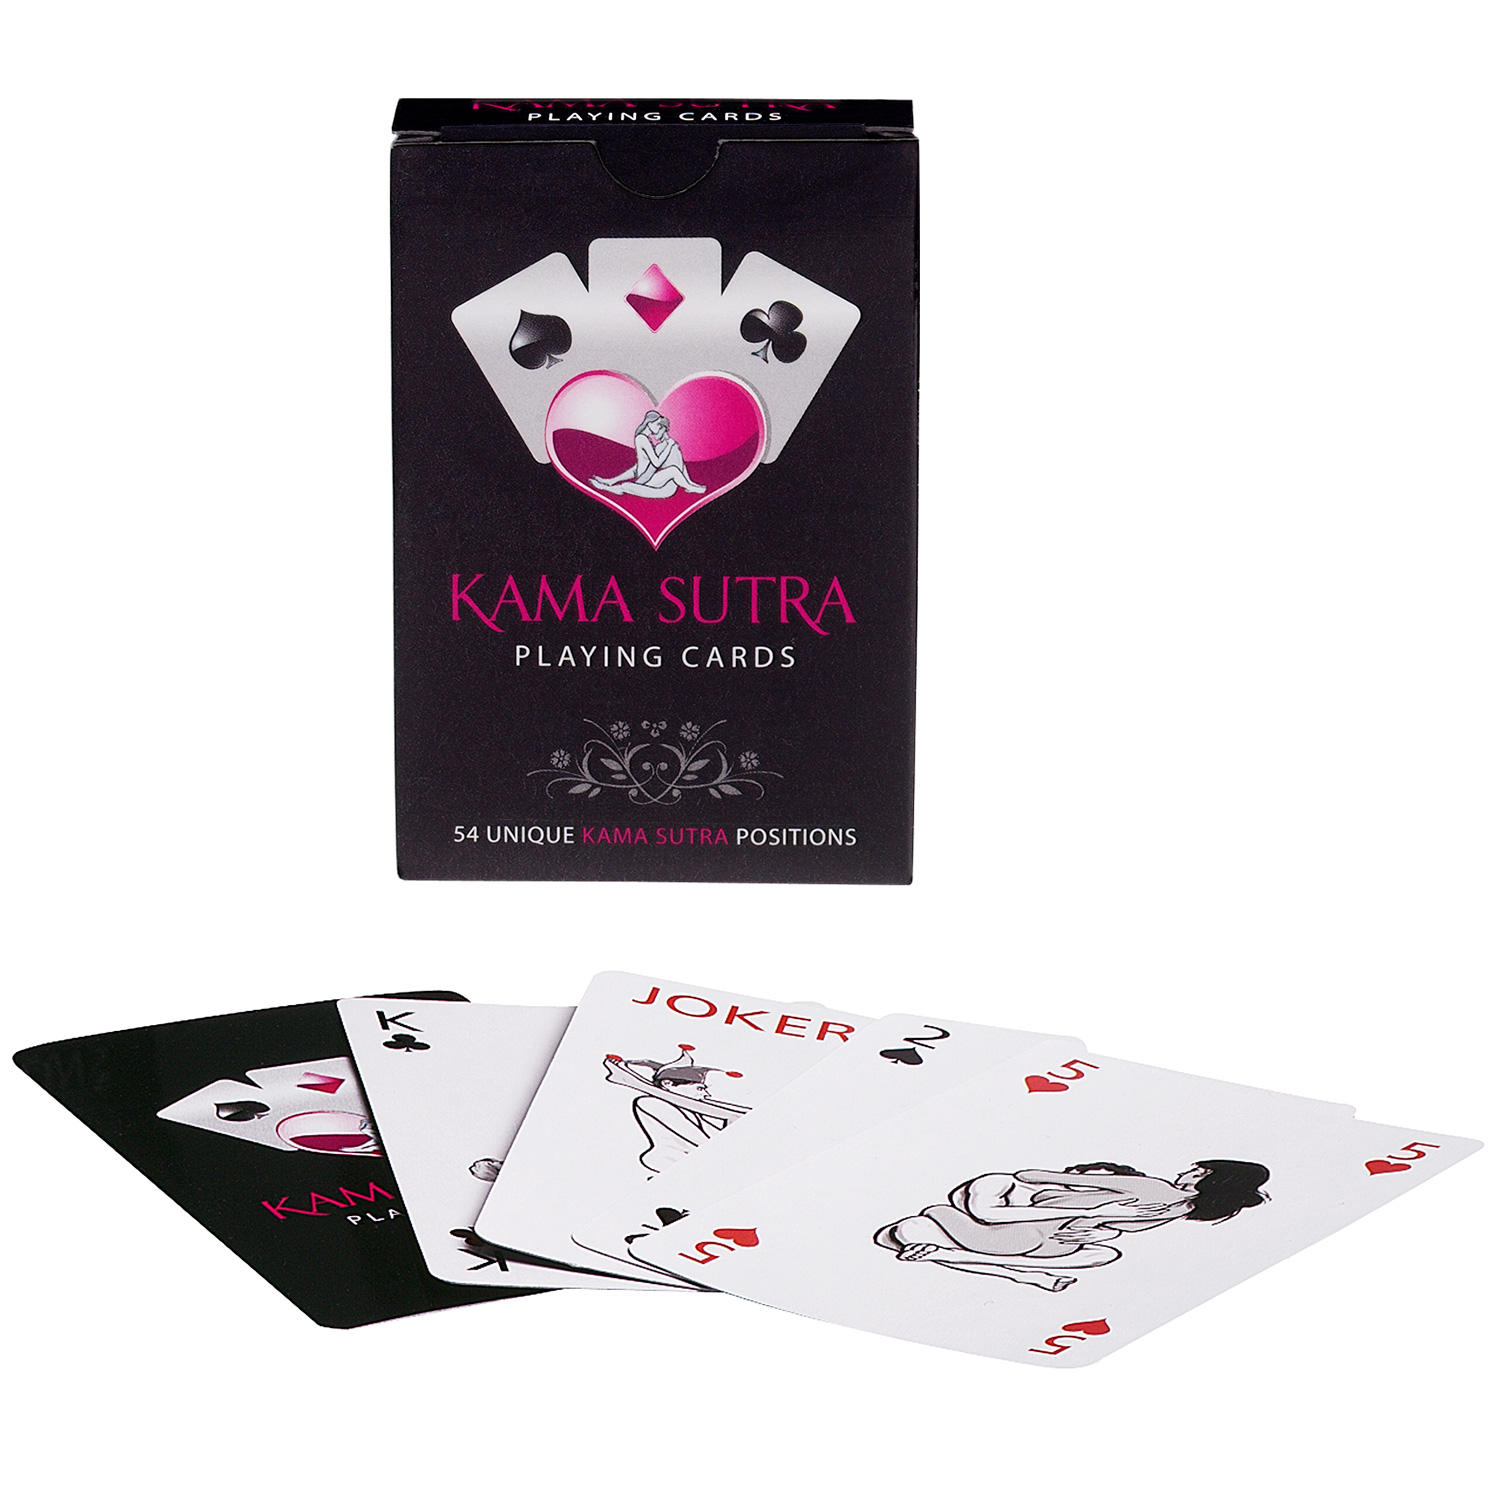 Kama Sutra Spelkort - Tease and Please